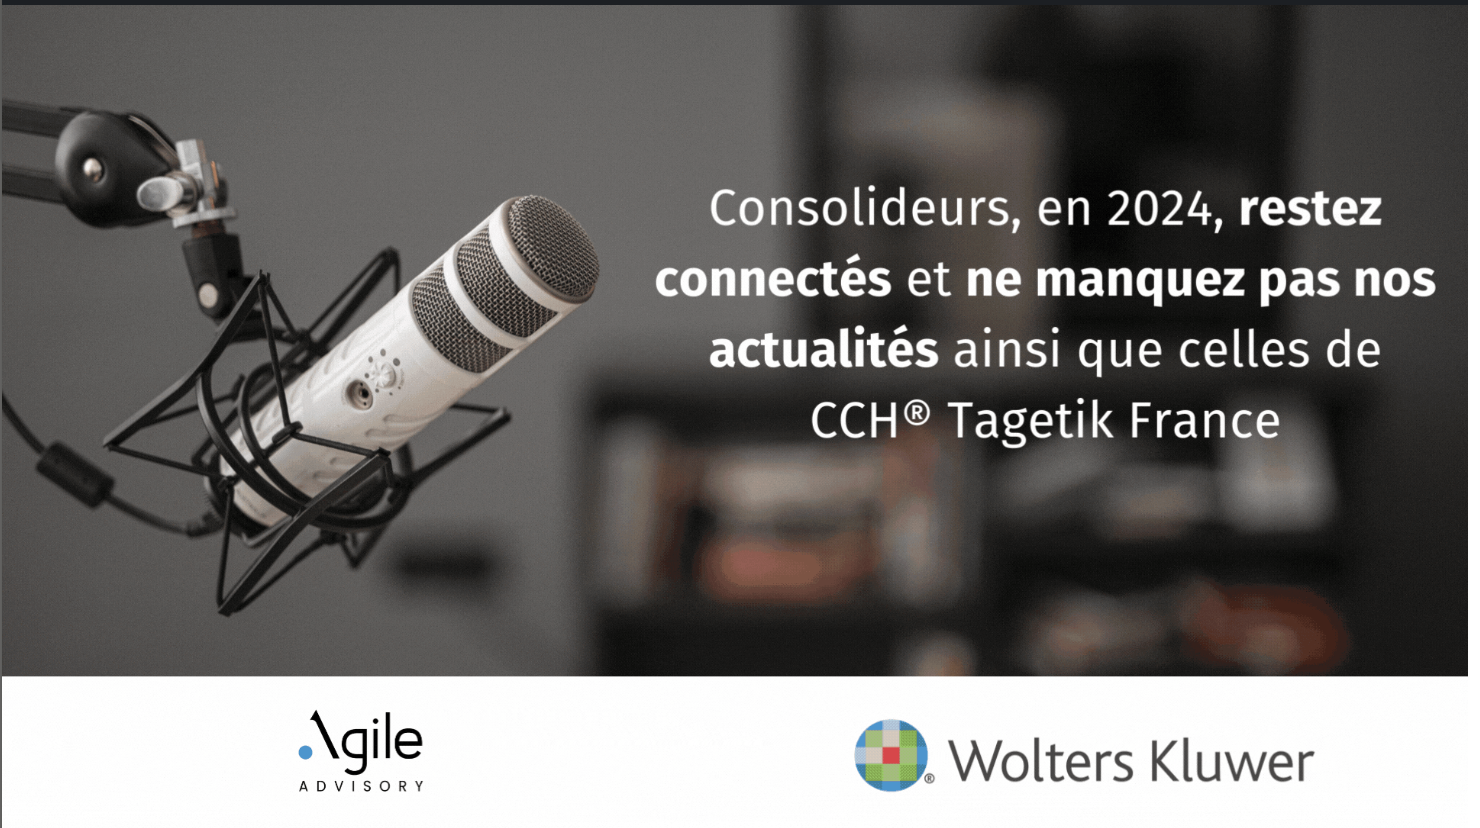 Agile Advisory & CCH Tagetik, la web-série